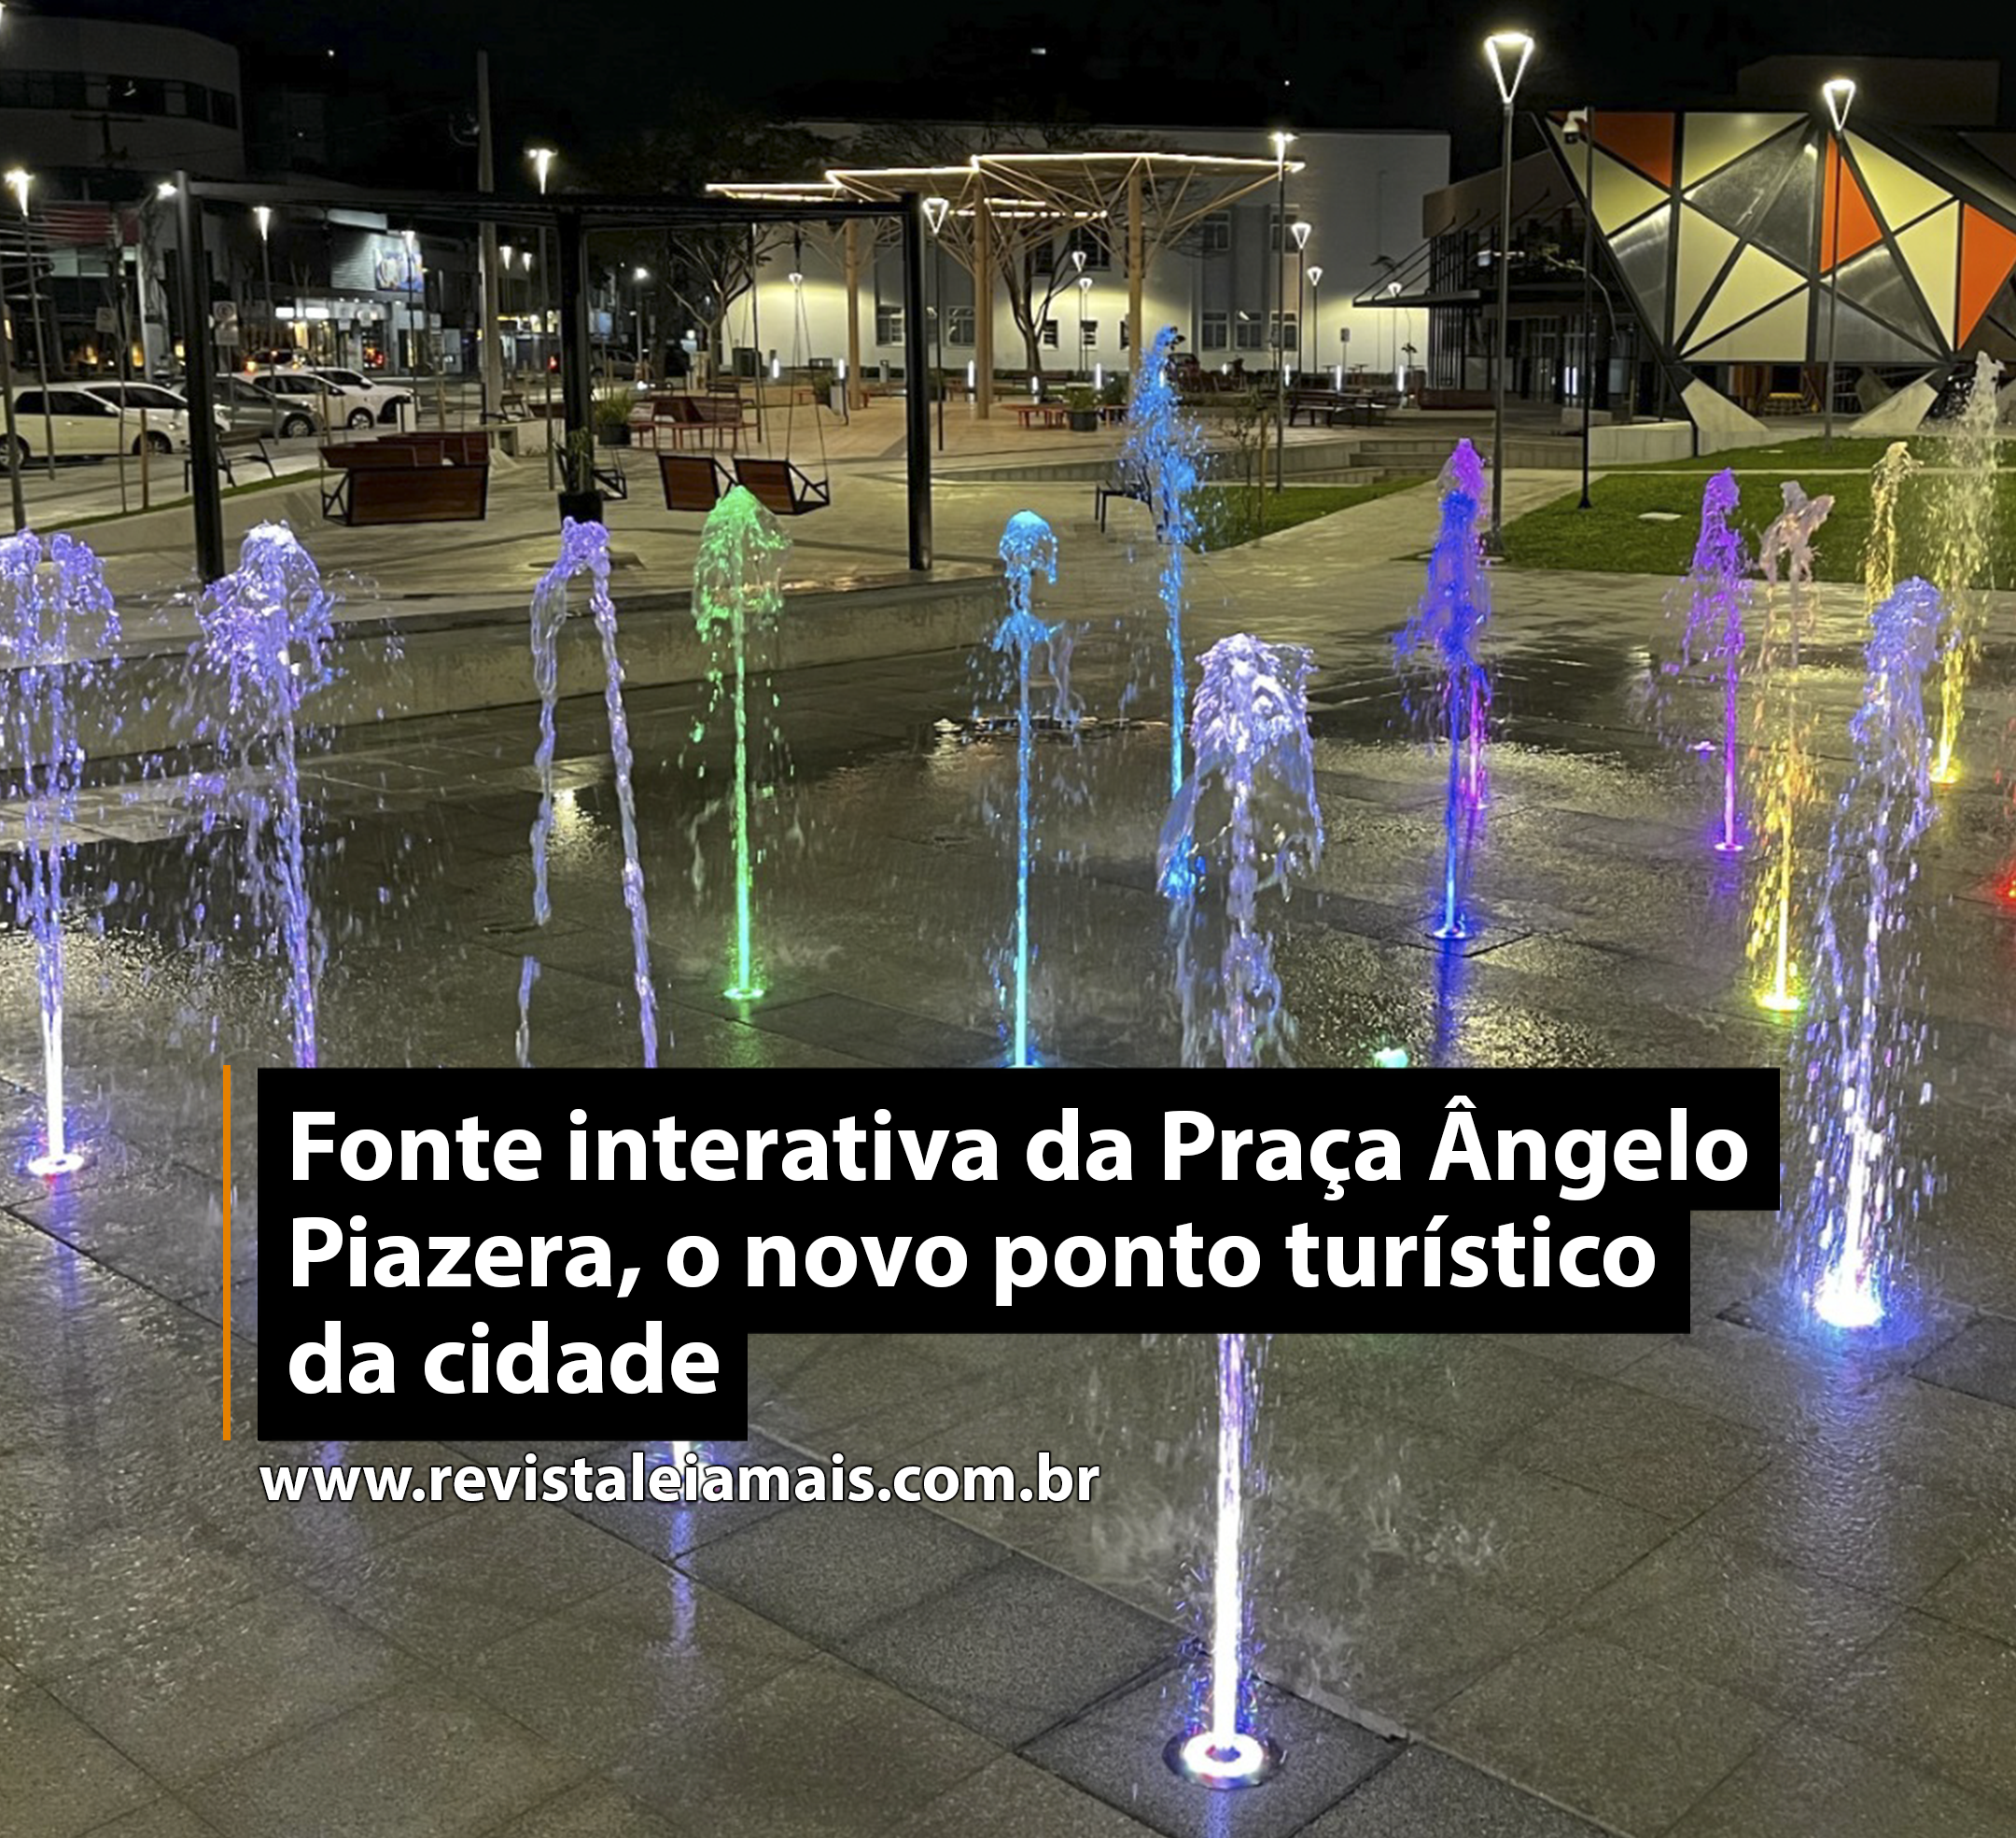 Fonte interativa da Praça Ângelo Piazera, o novo ponto turístico da cidade